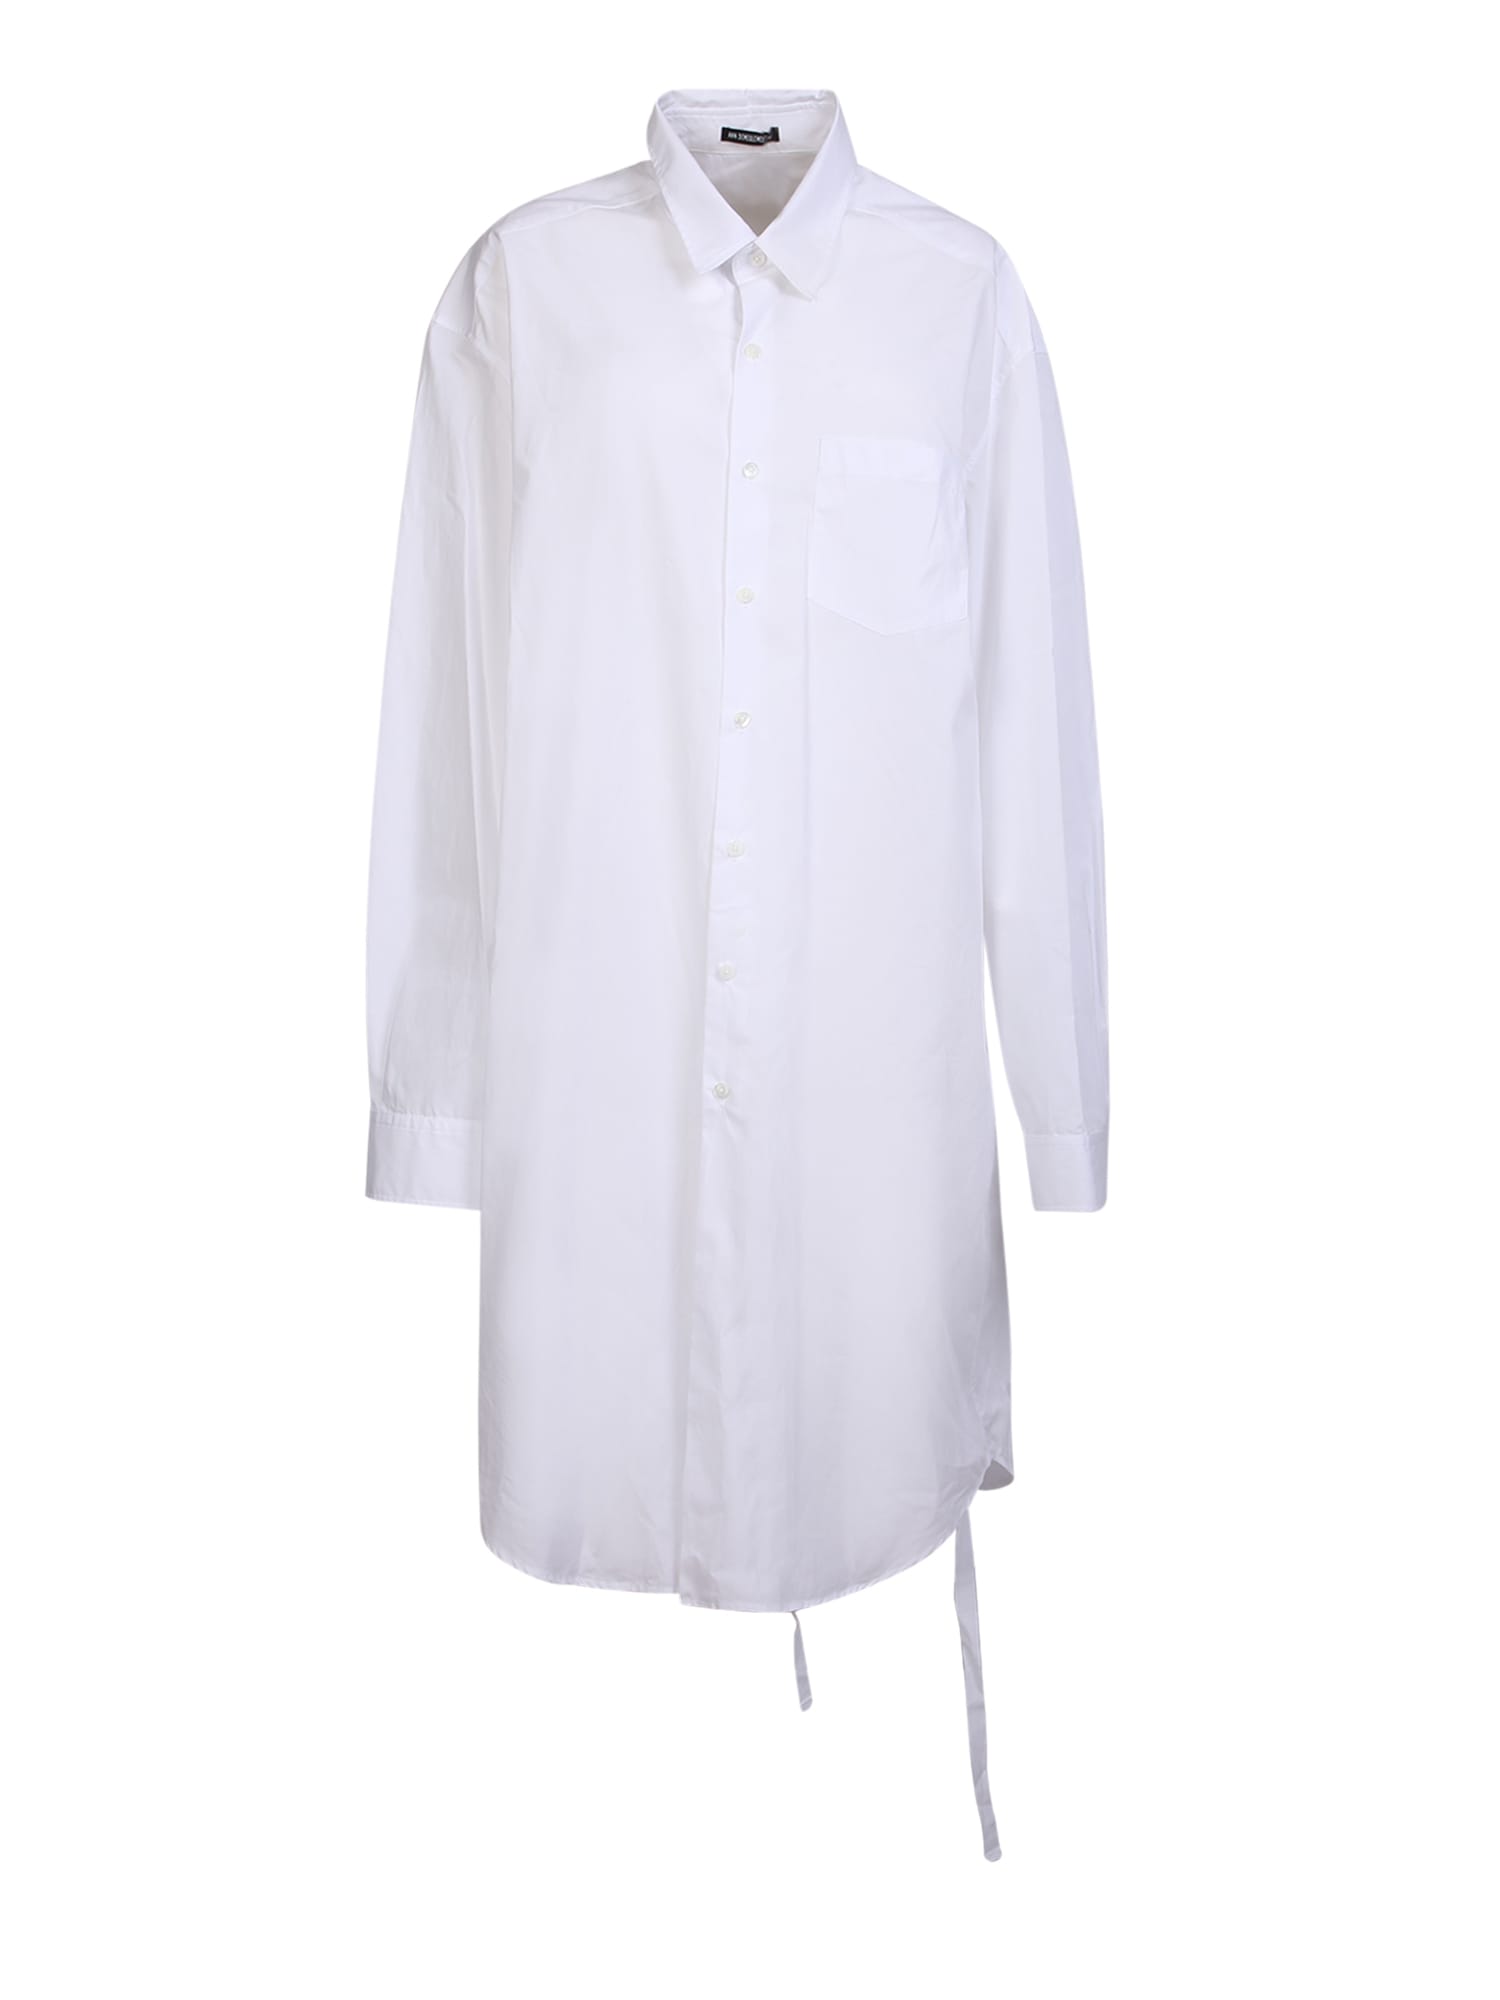 Ann Demeulemeester Kristen Shirt In White